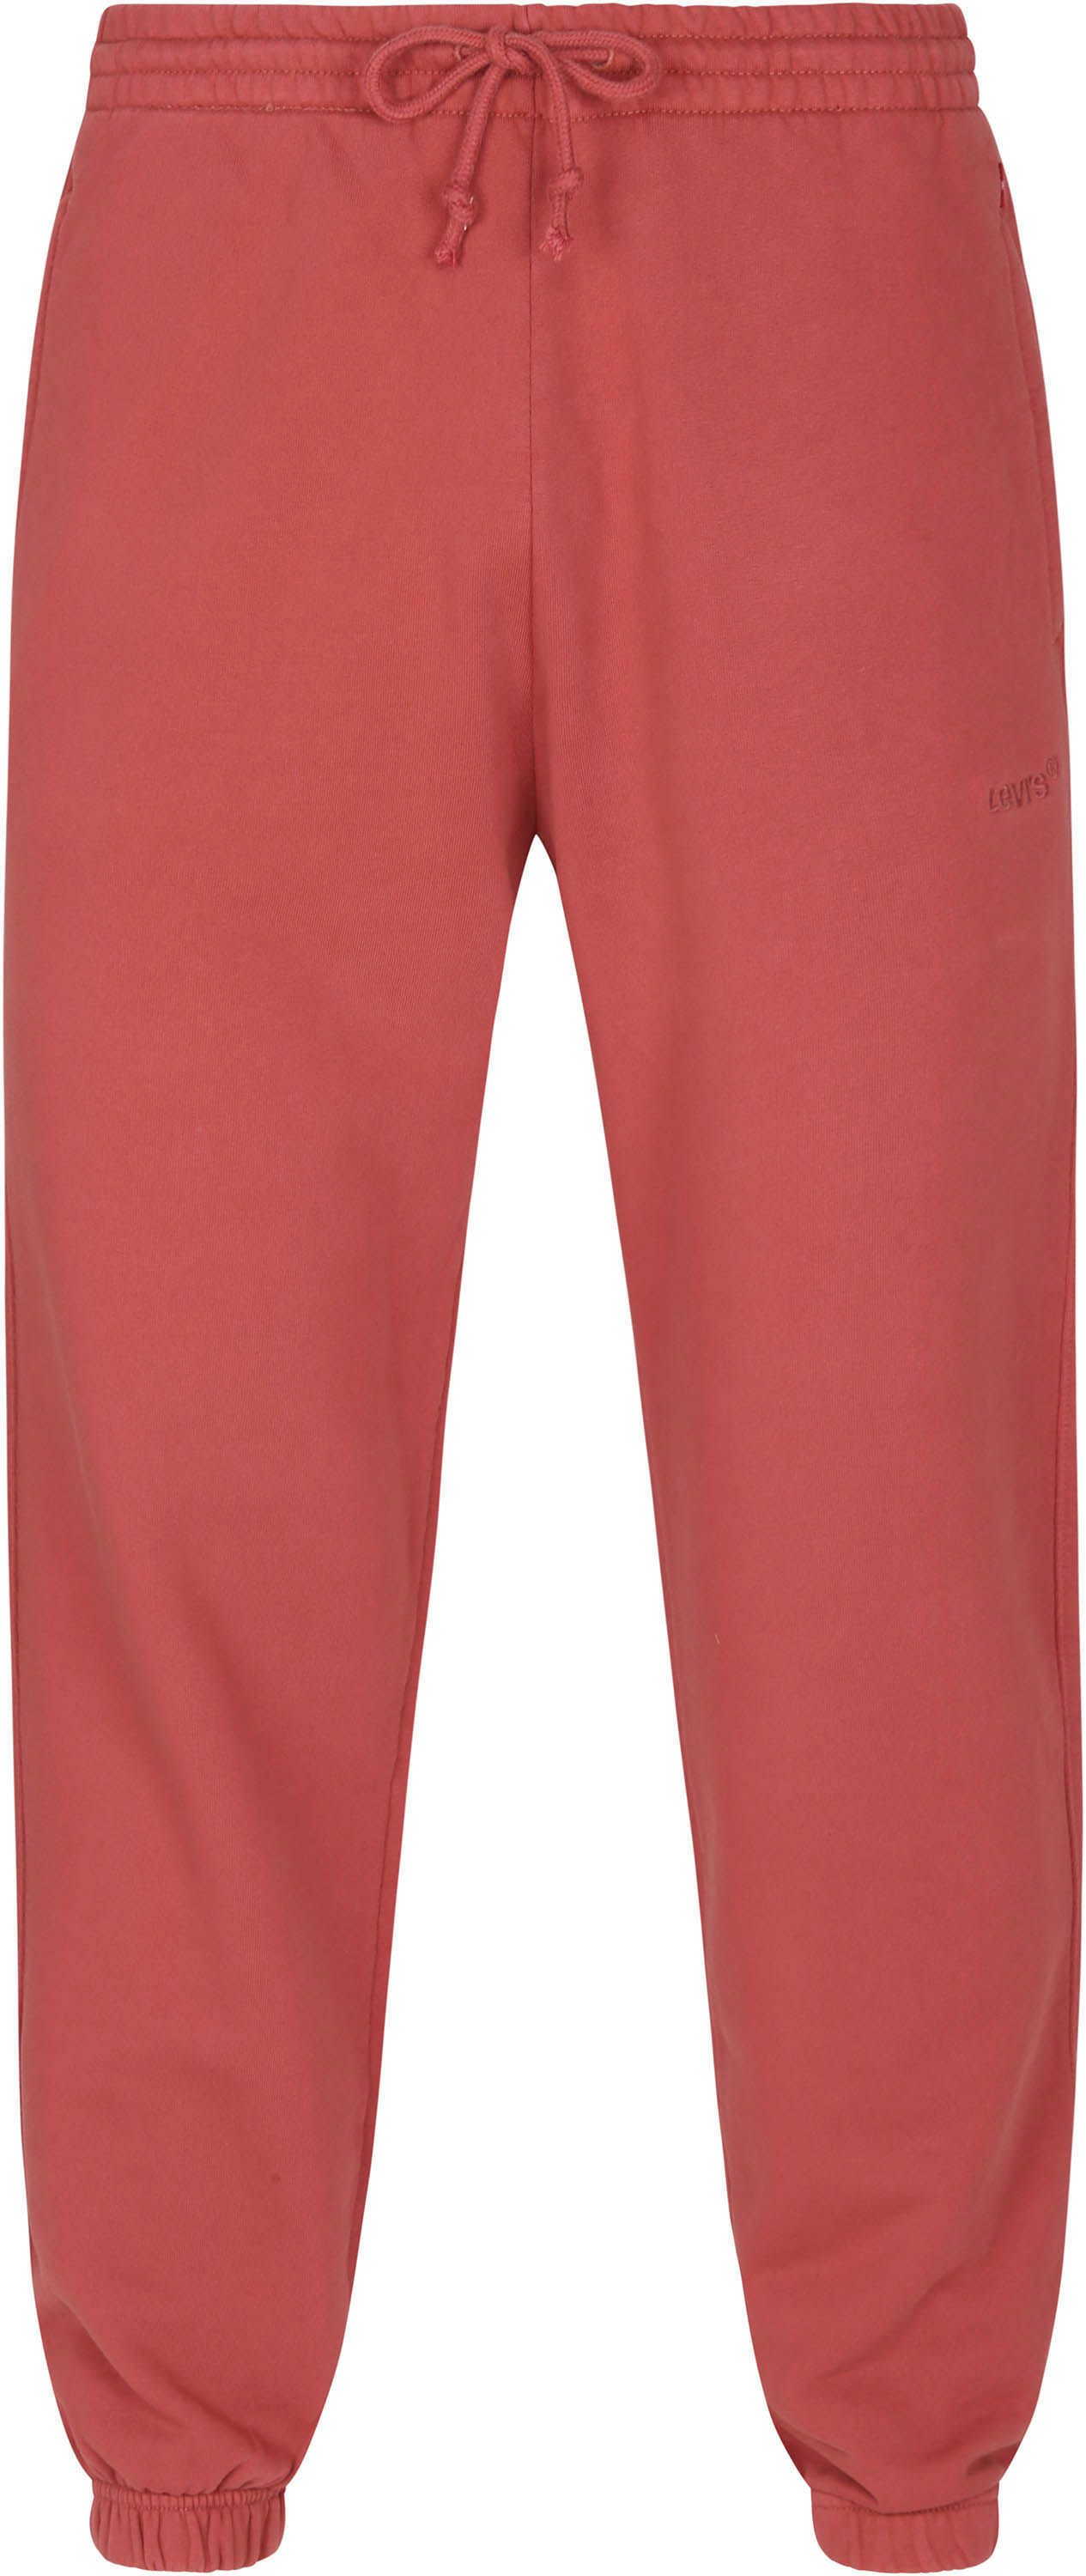 Levi's Sweatpants Garment Dye Red size L